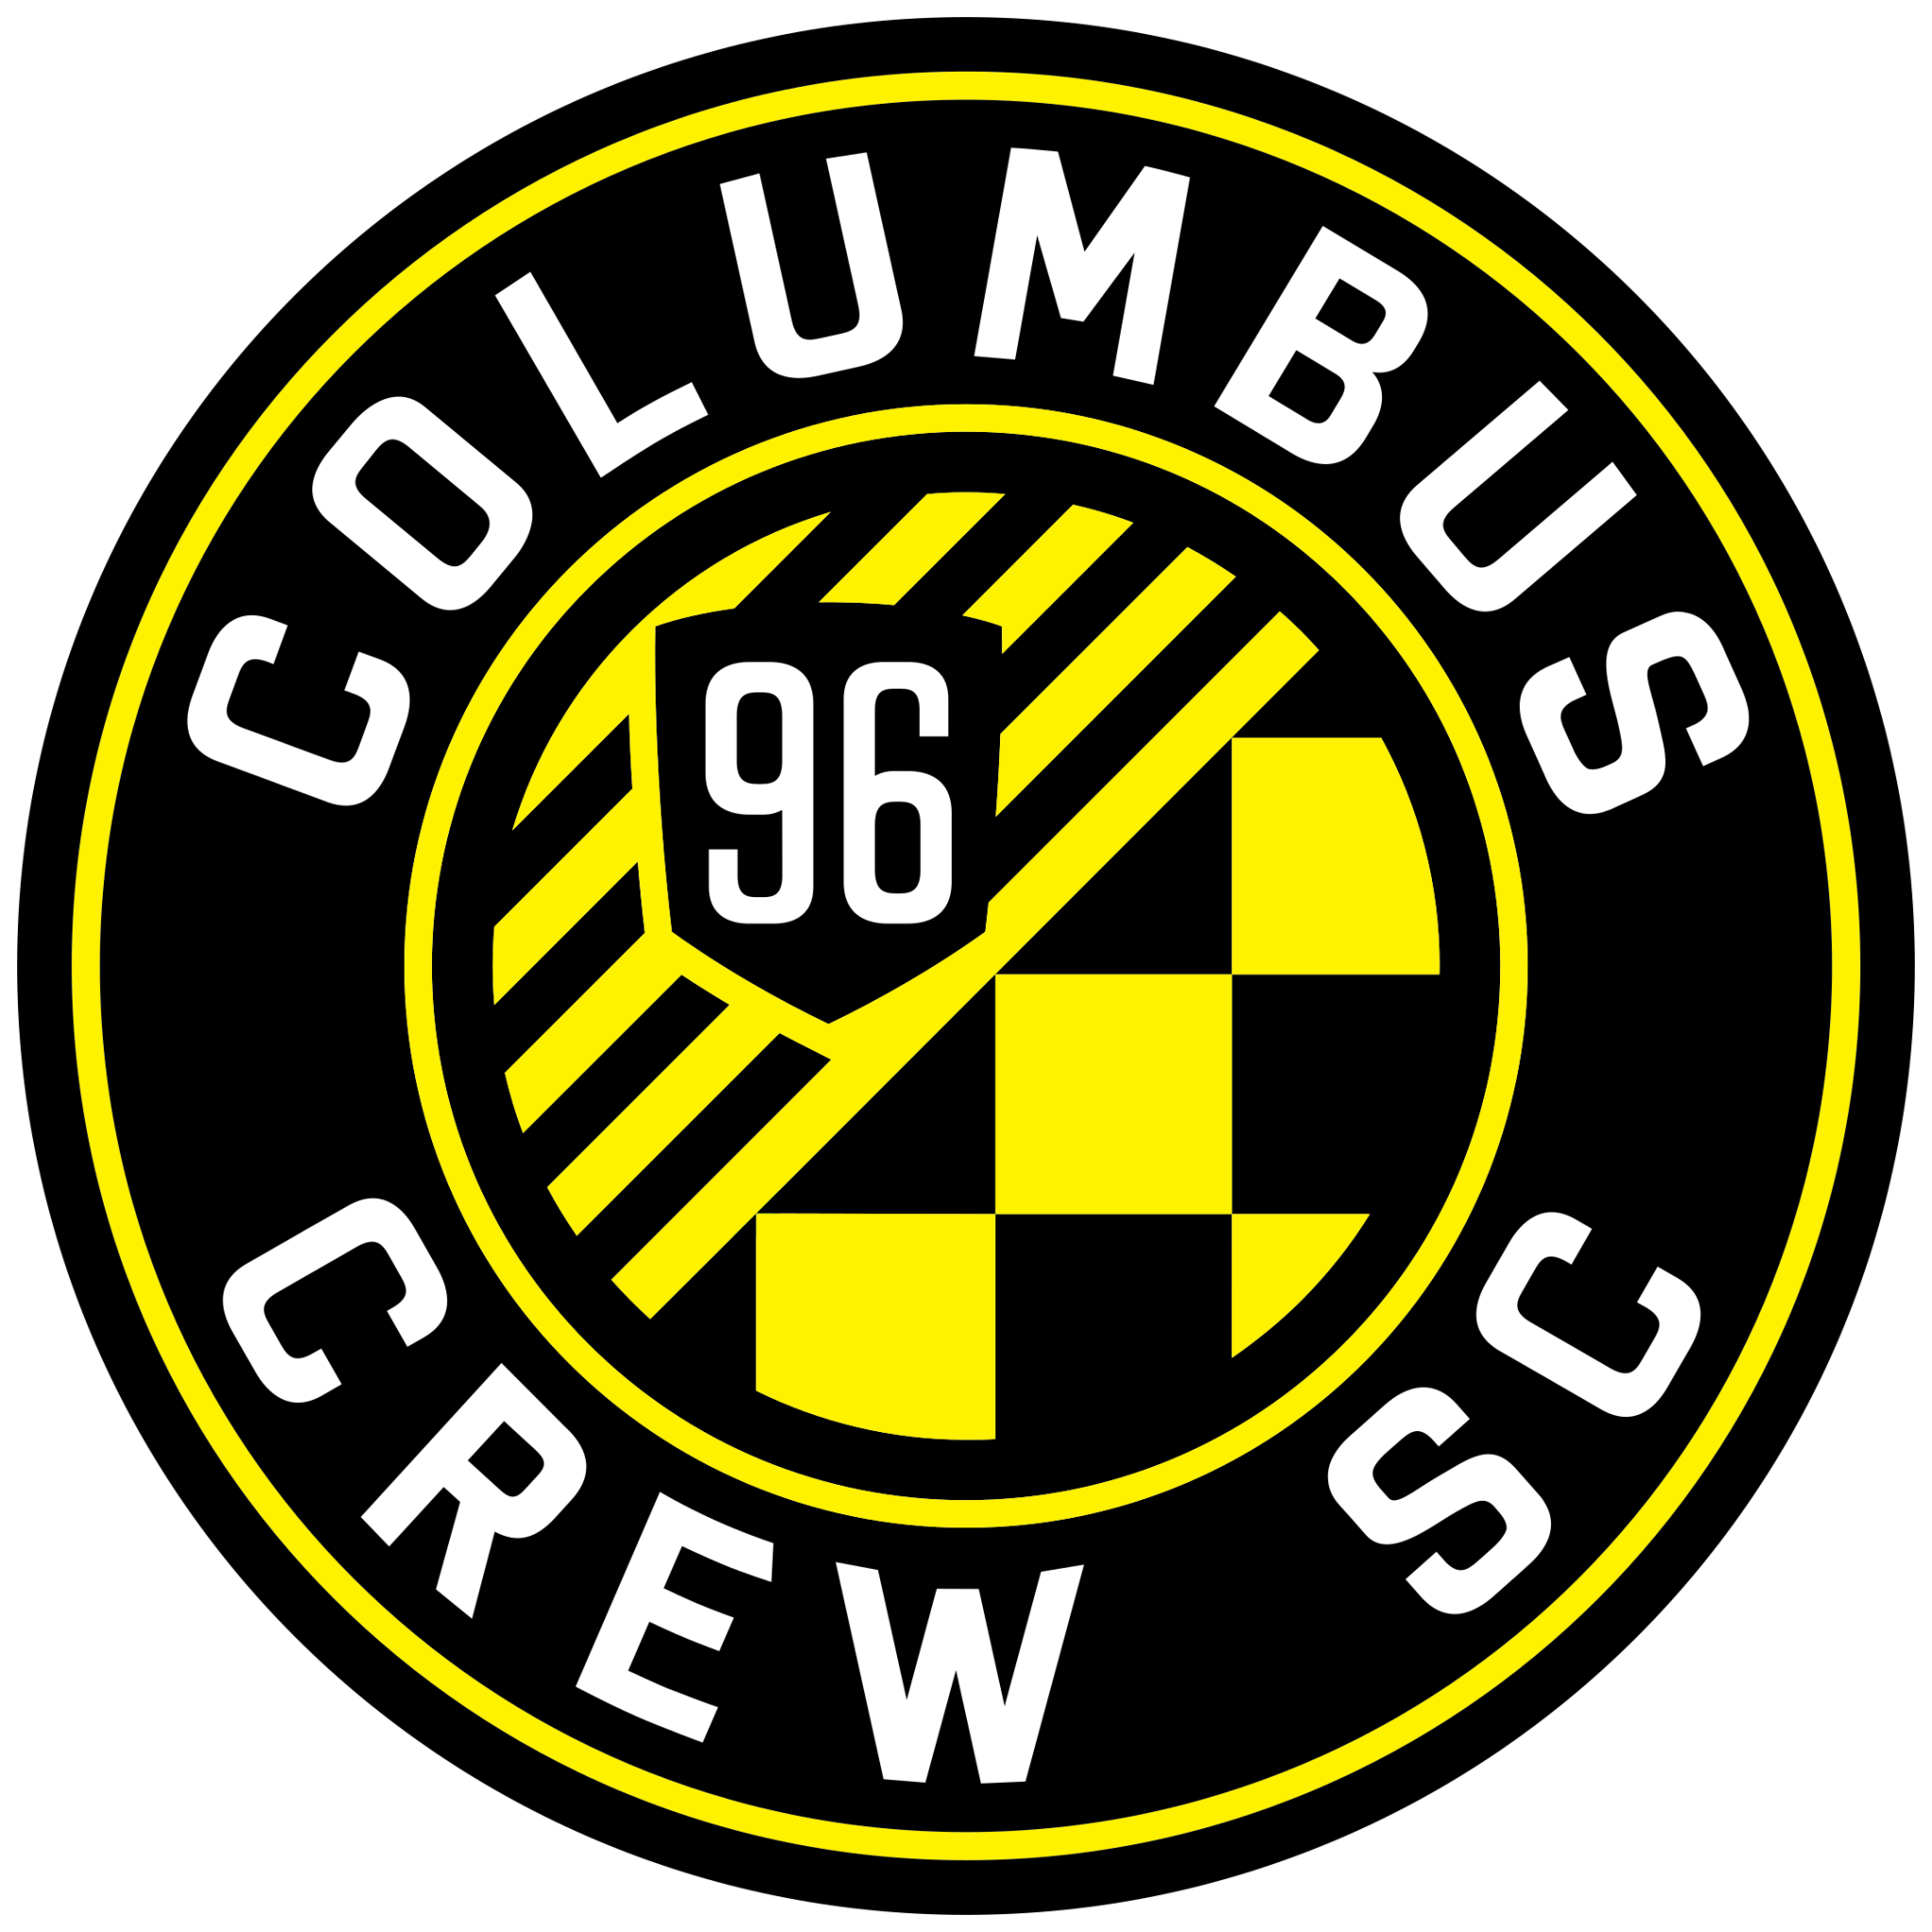 Columbus Crew New Logo